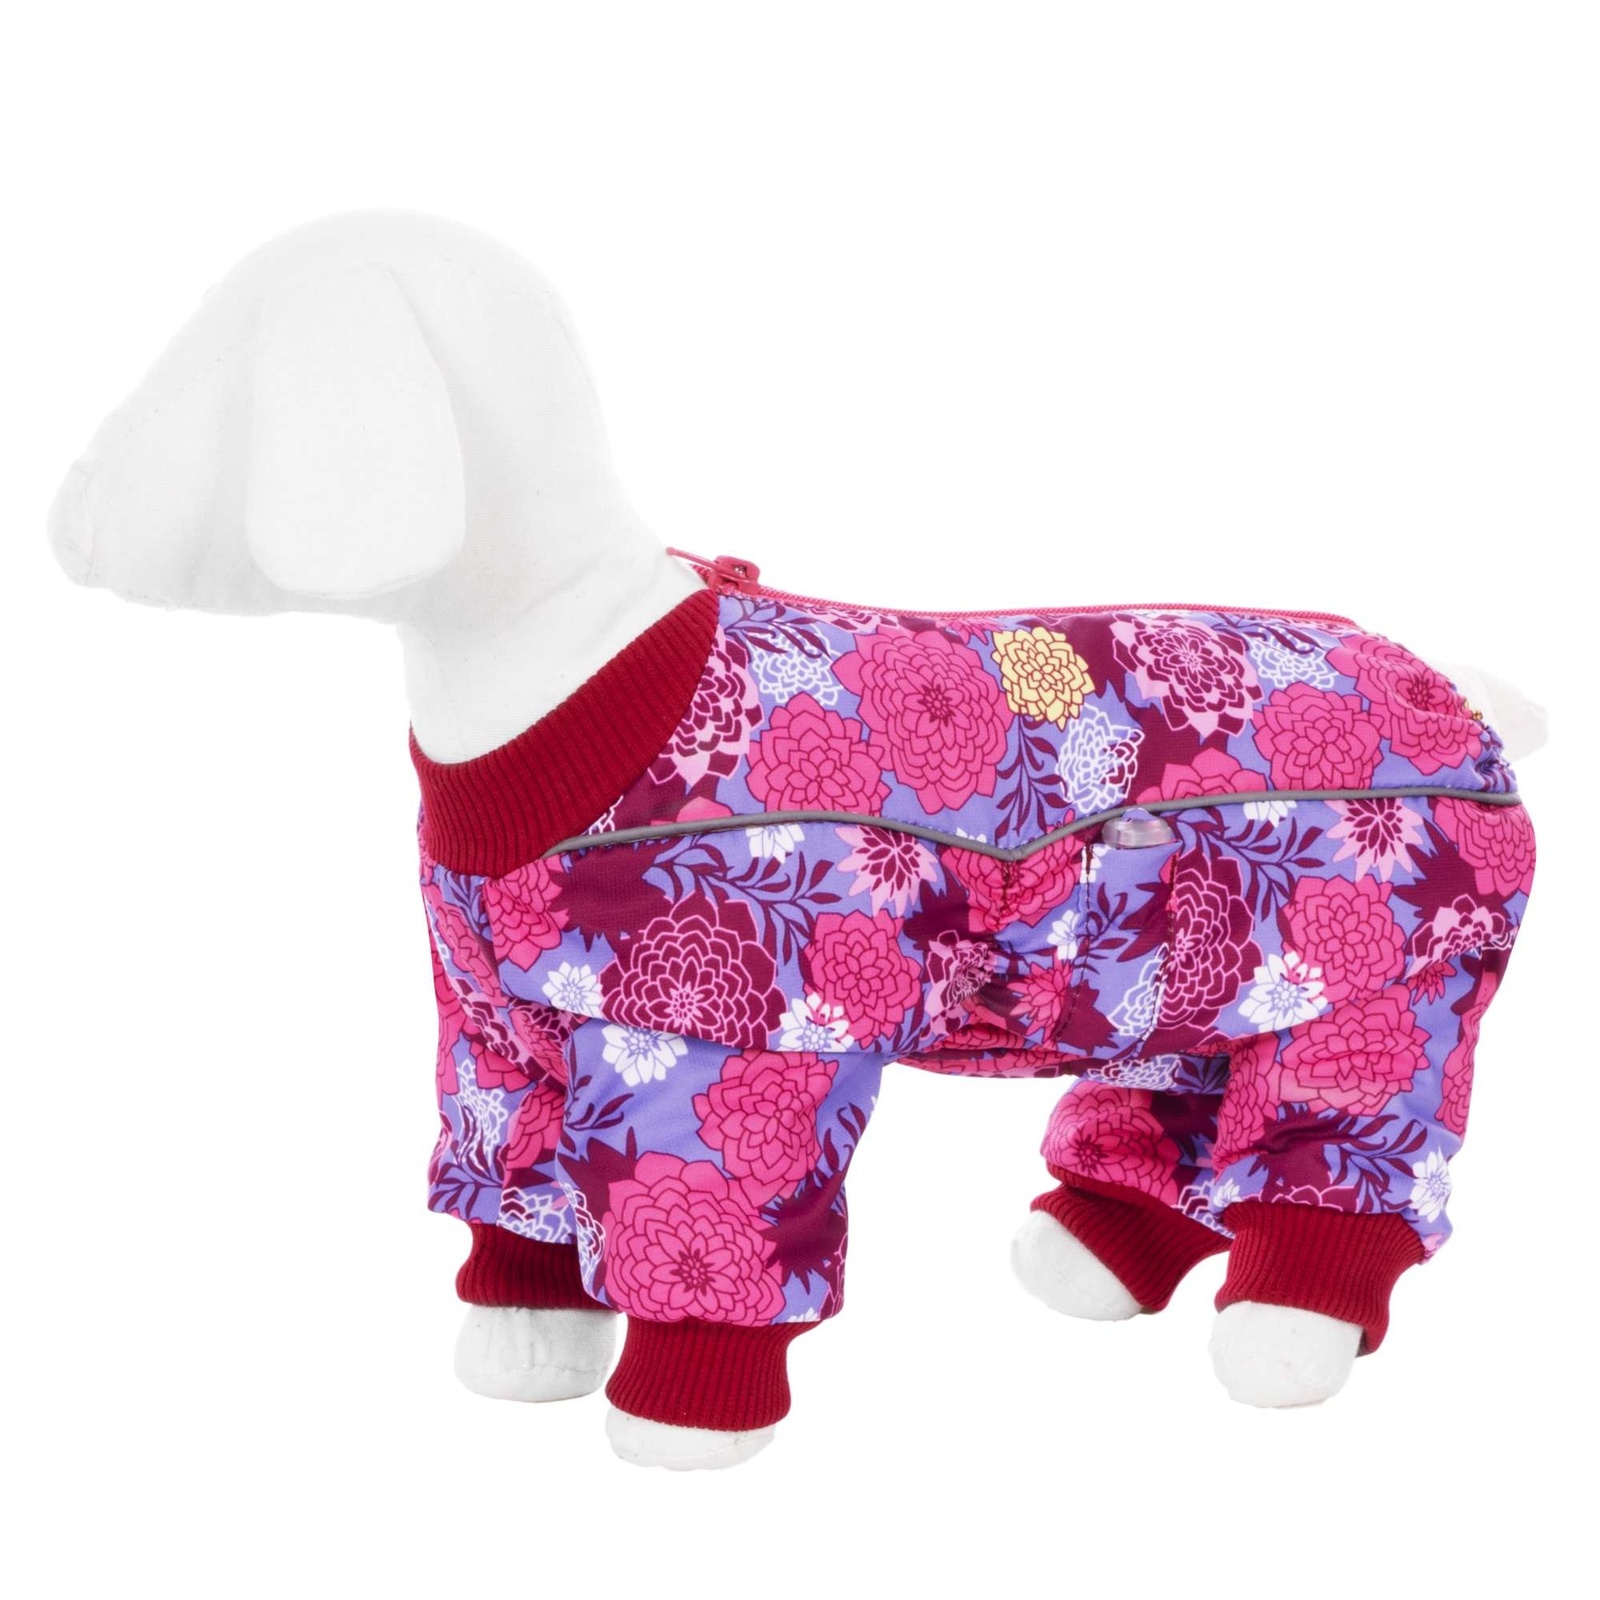 Yami-Yami одежда Yami-Yami одежда комбинезон для собак малых пород, на флисе с рисунком цветы (100 г) 37685